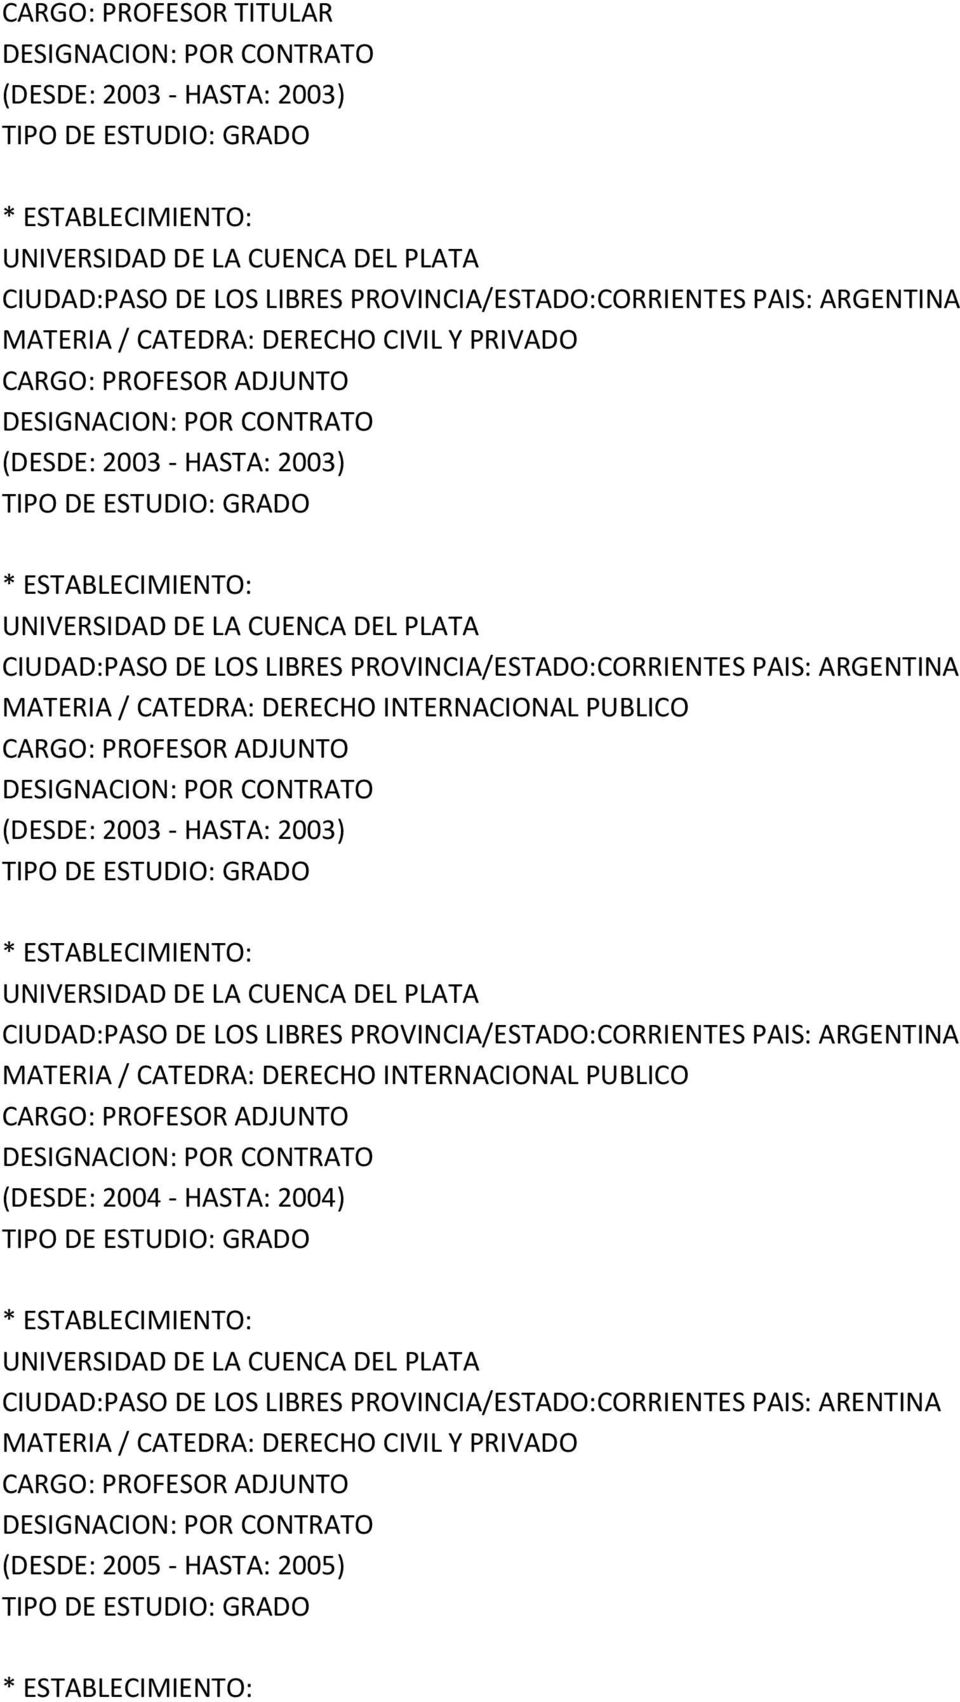 (DESDE: 2003 - HASTA: 2003) CIUDAD:PASO DE LOS LIBRES PROVINCIA/ESTADO:CORRIENTES PAIS: ARGENTINA MATERIA / CATEDRA: DERECHO INTERNACIONAL PUBLICO CARGO: PROFESOR ADJUNTO (DESDE: